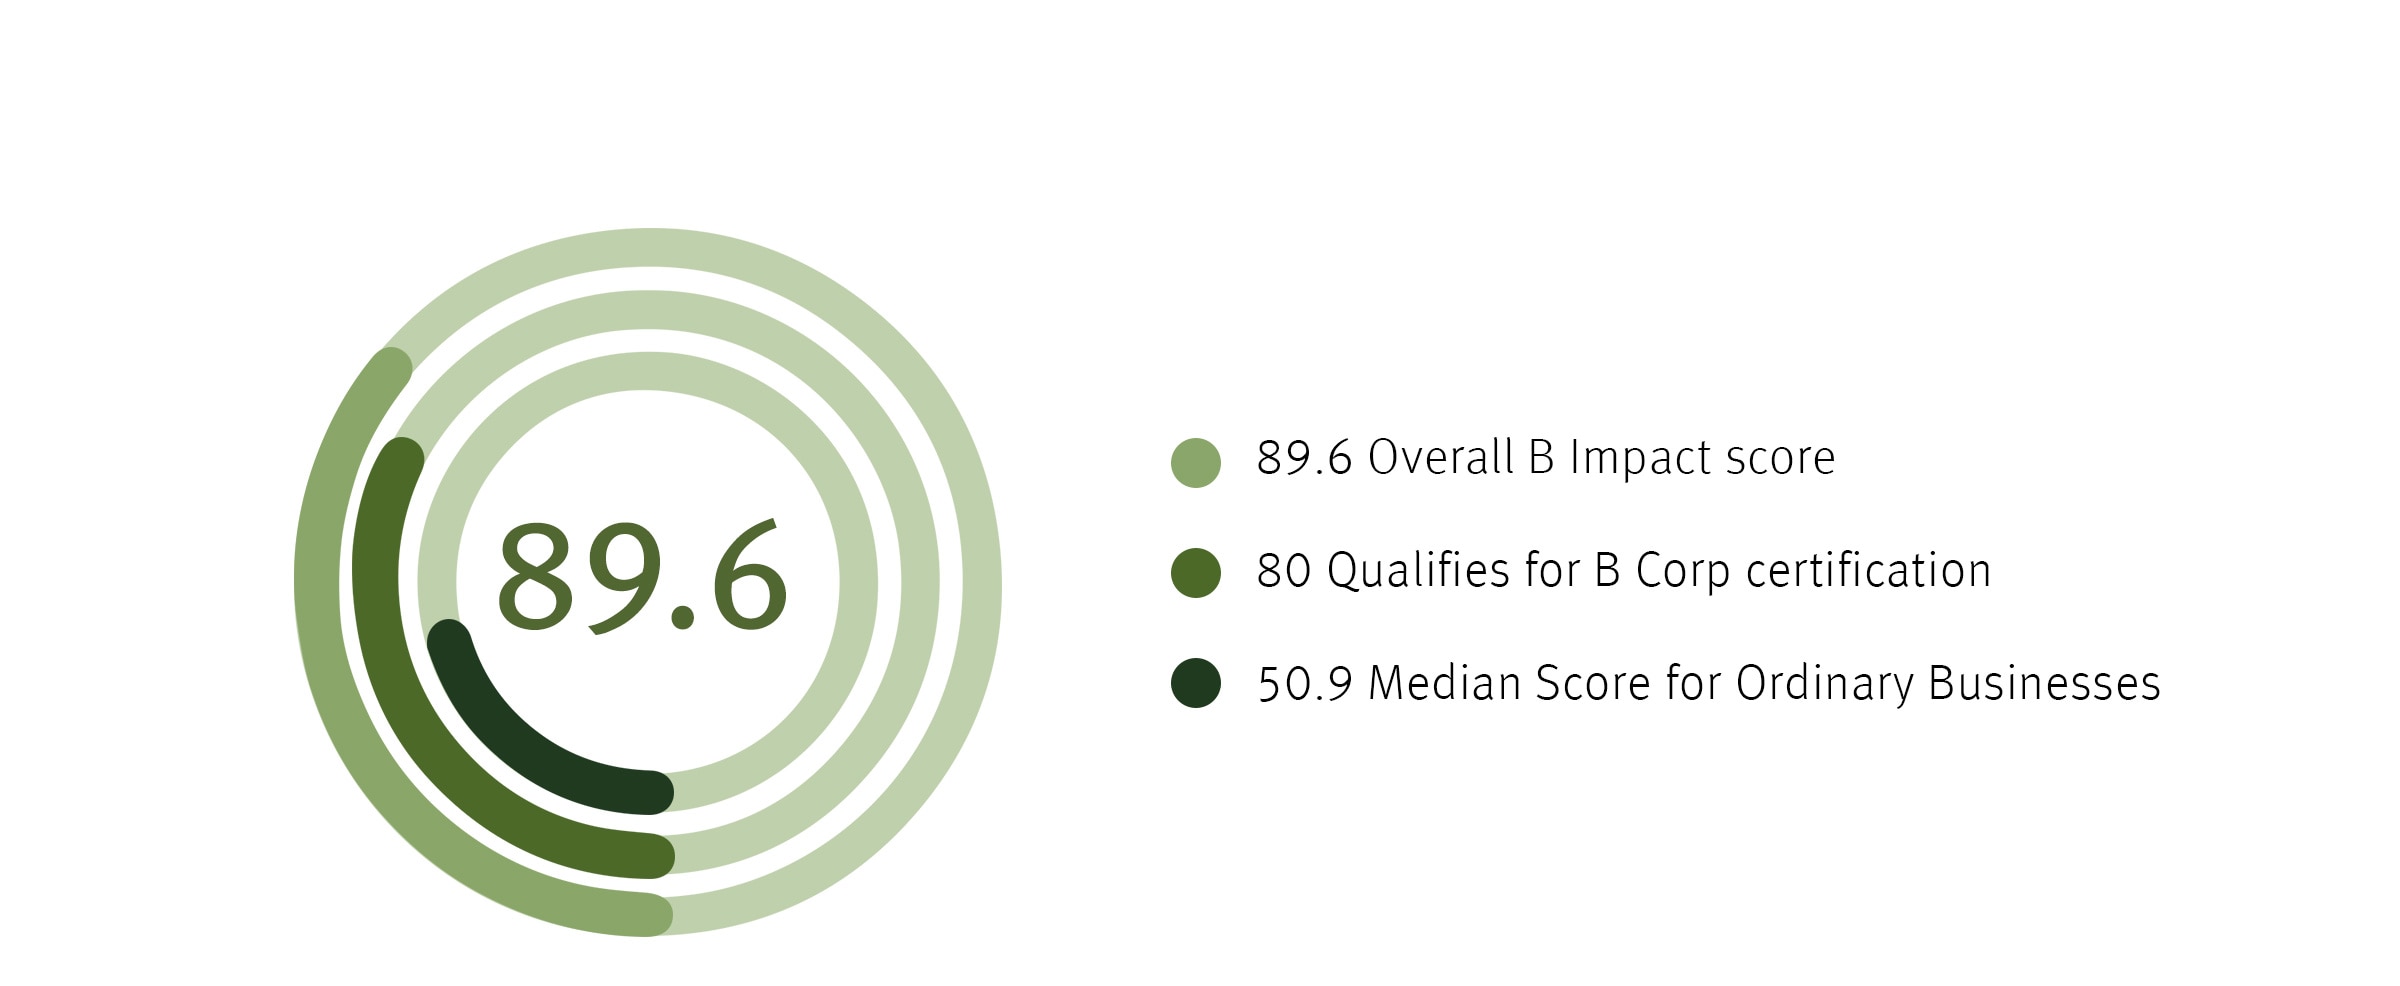 Aveda's gesamter B Impact Score ist 89.6